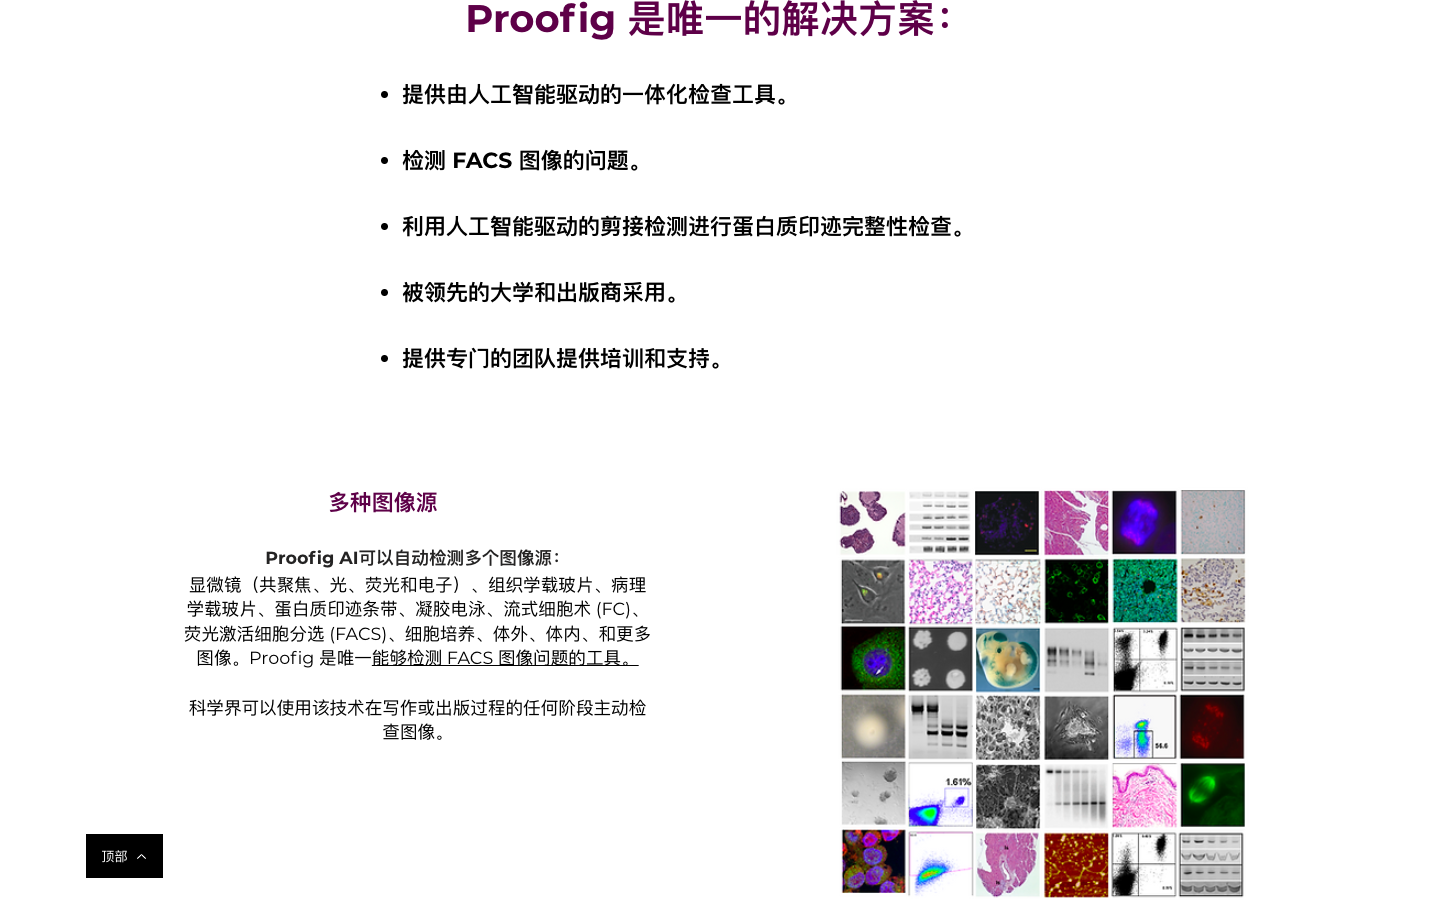 Proofig AI图片抄袭检测器